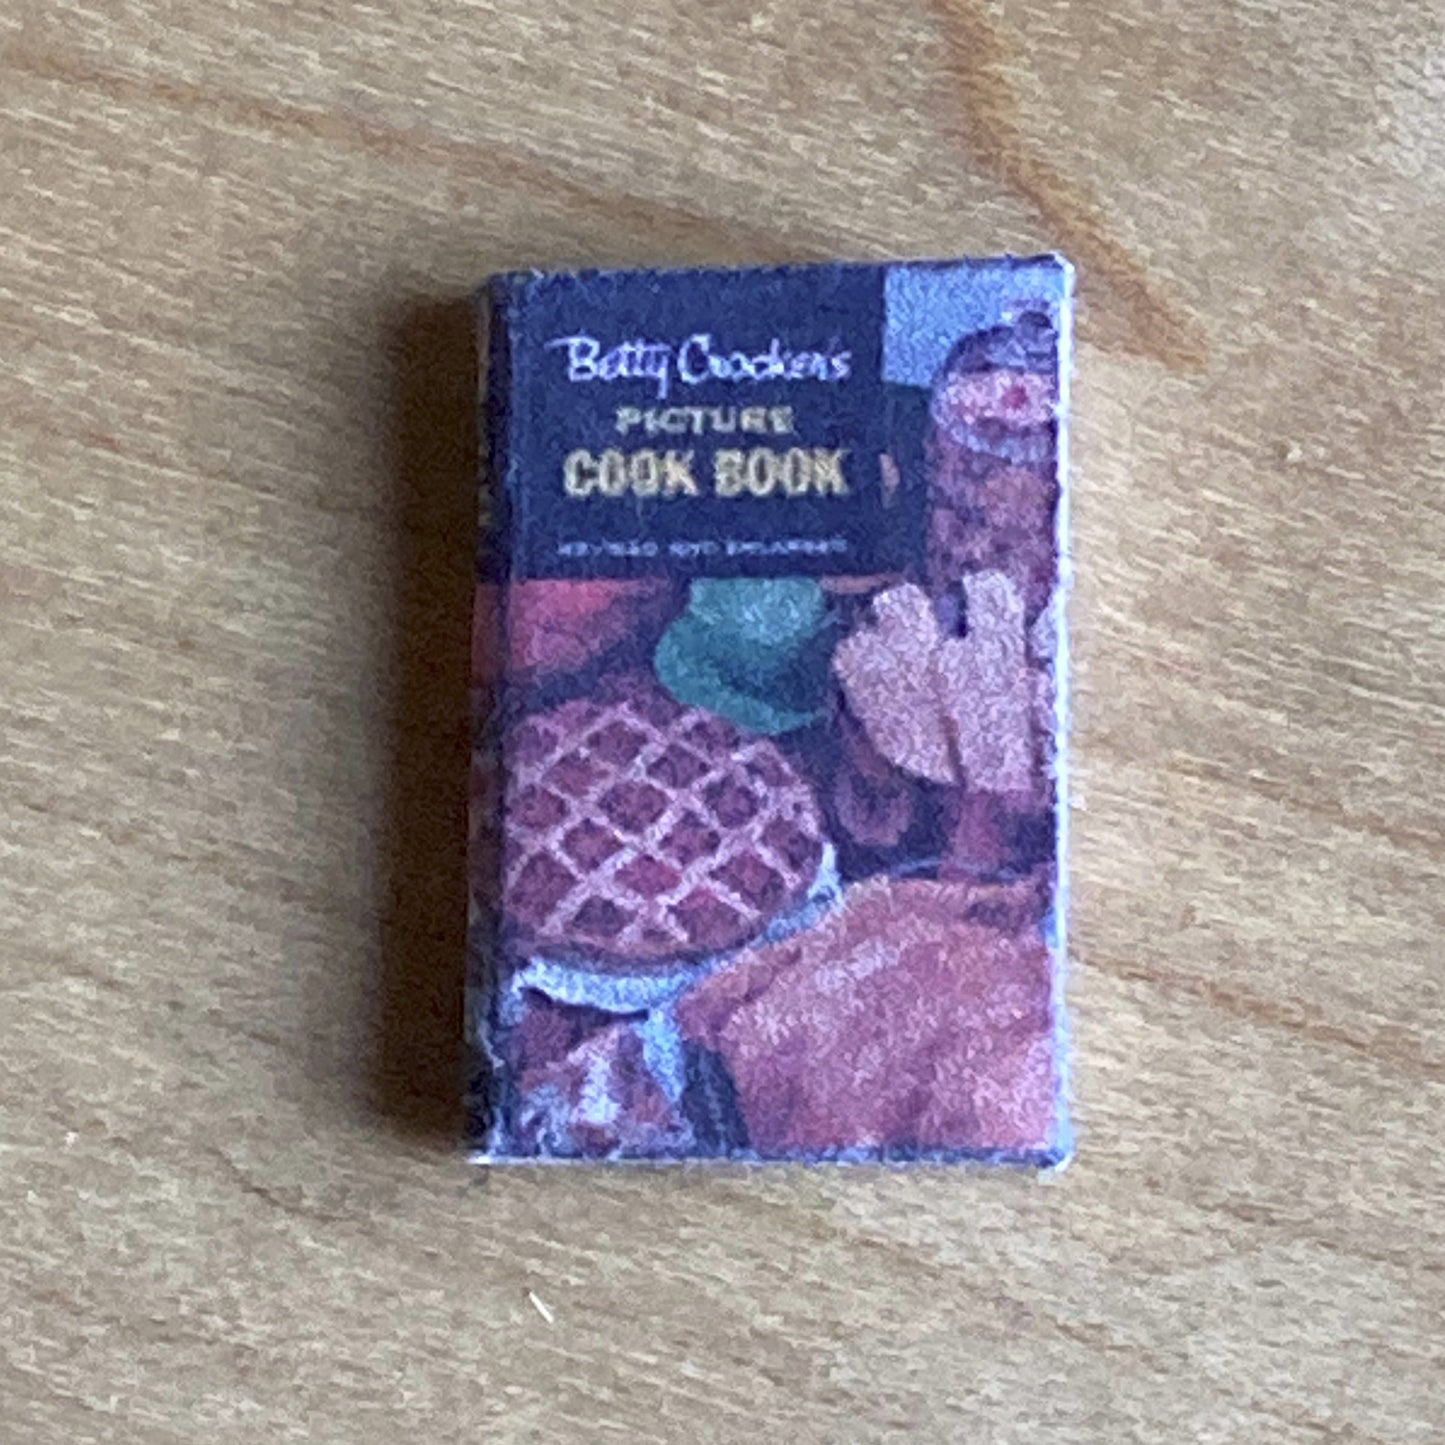 1:12 scale Cookbook